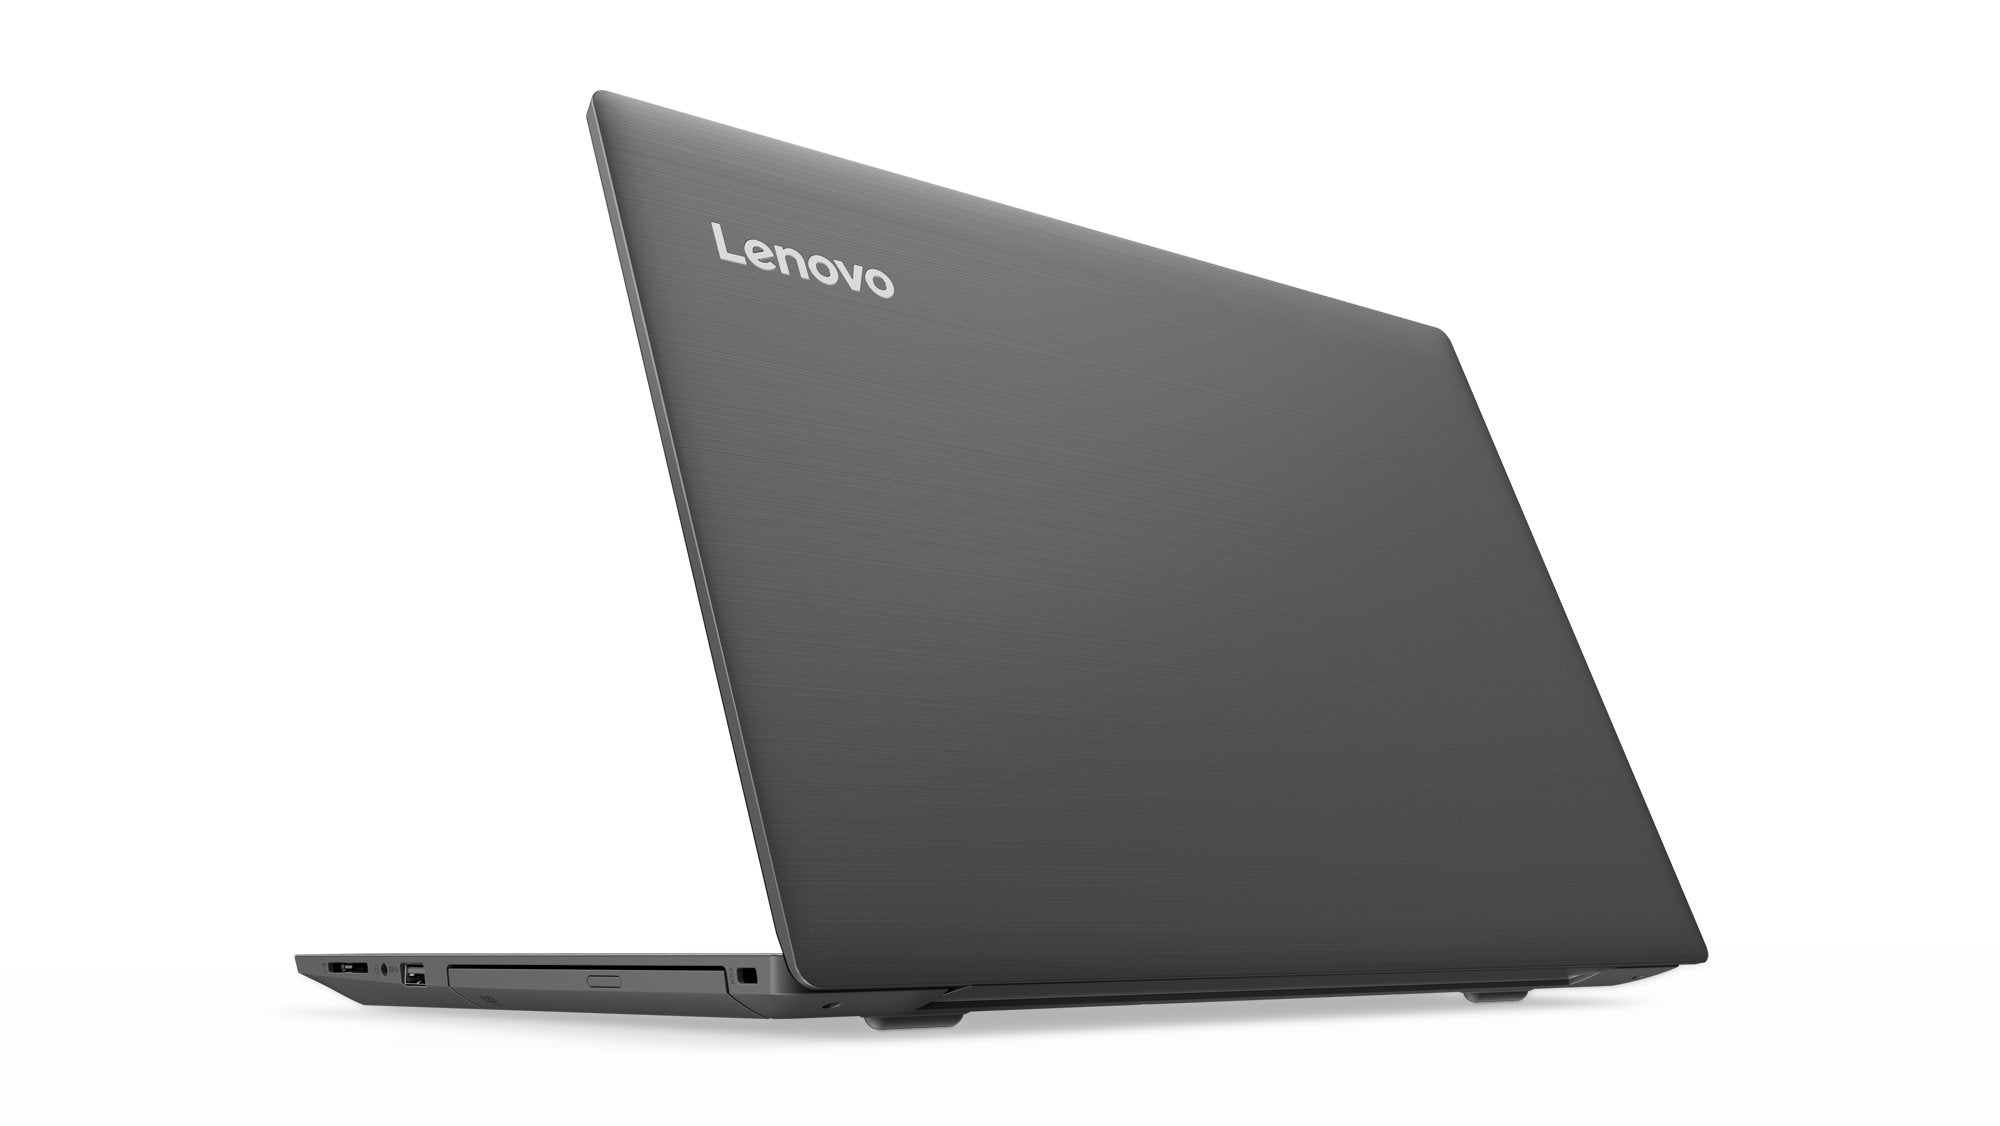 Lenovo V330-15IKB (81AX00ARUK) 15.6" Full HD Laptop Intel Core i5-8250U Processor, 8GB RAM, 256GB SSD, Windows 10 Pro - Grey